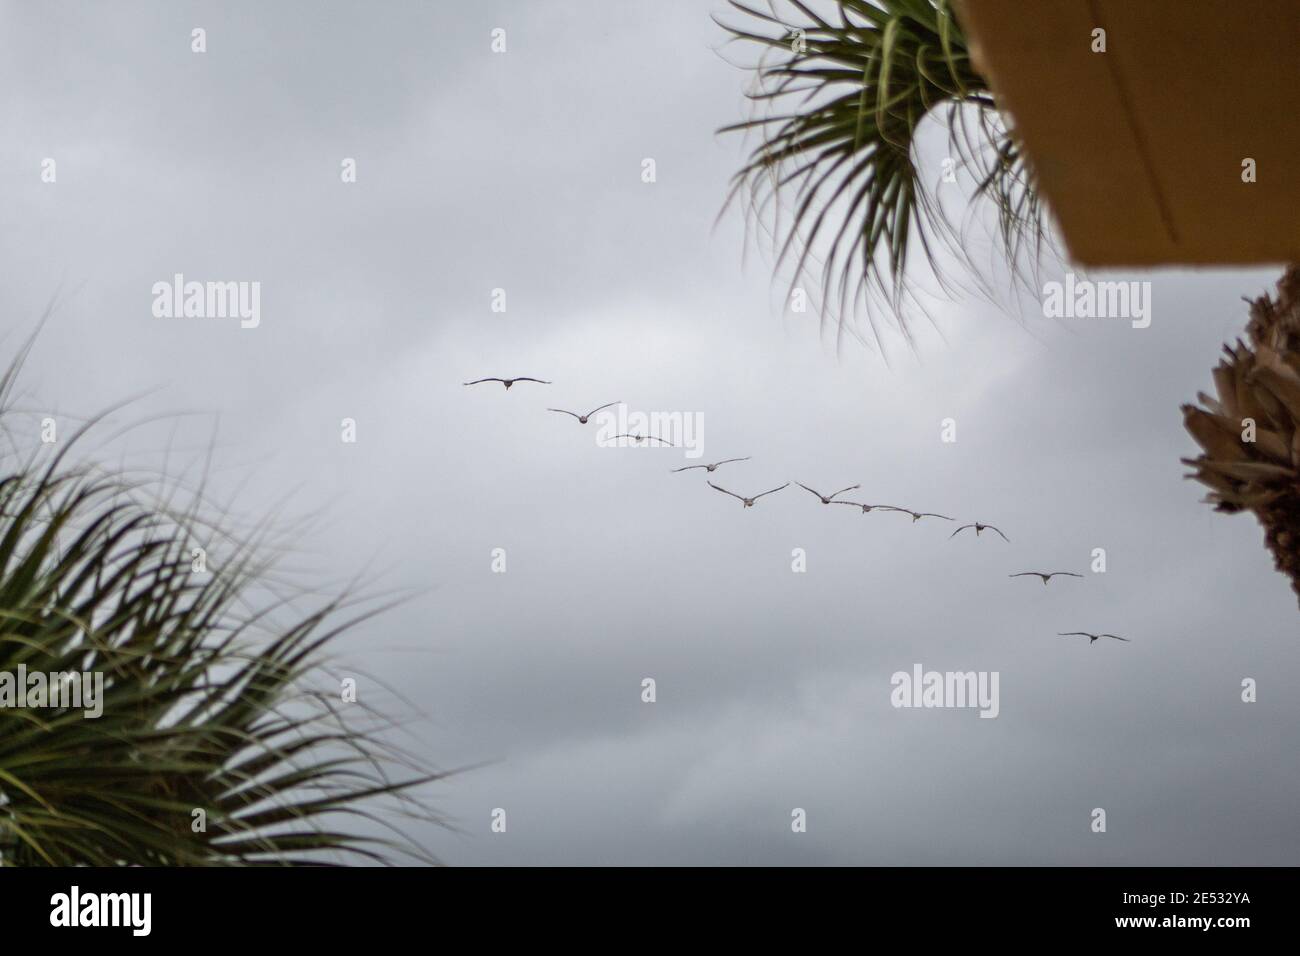 Flock of birds in flight Stock Photo